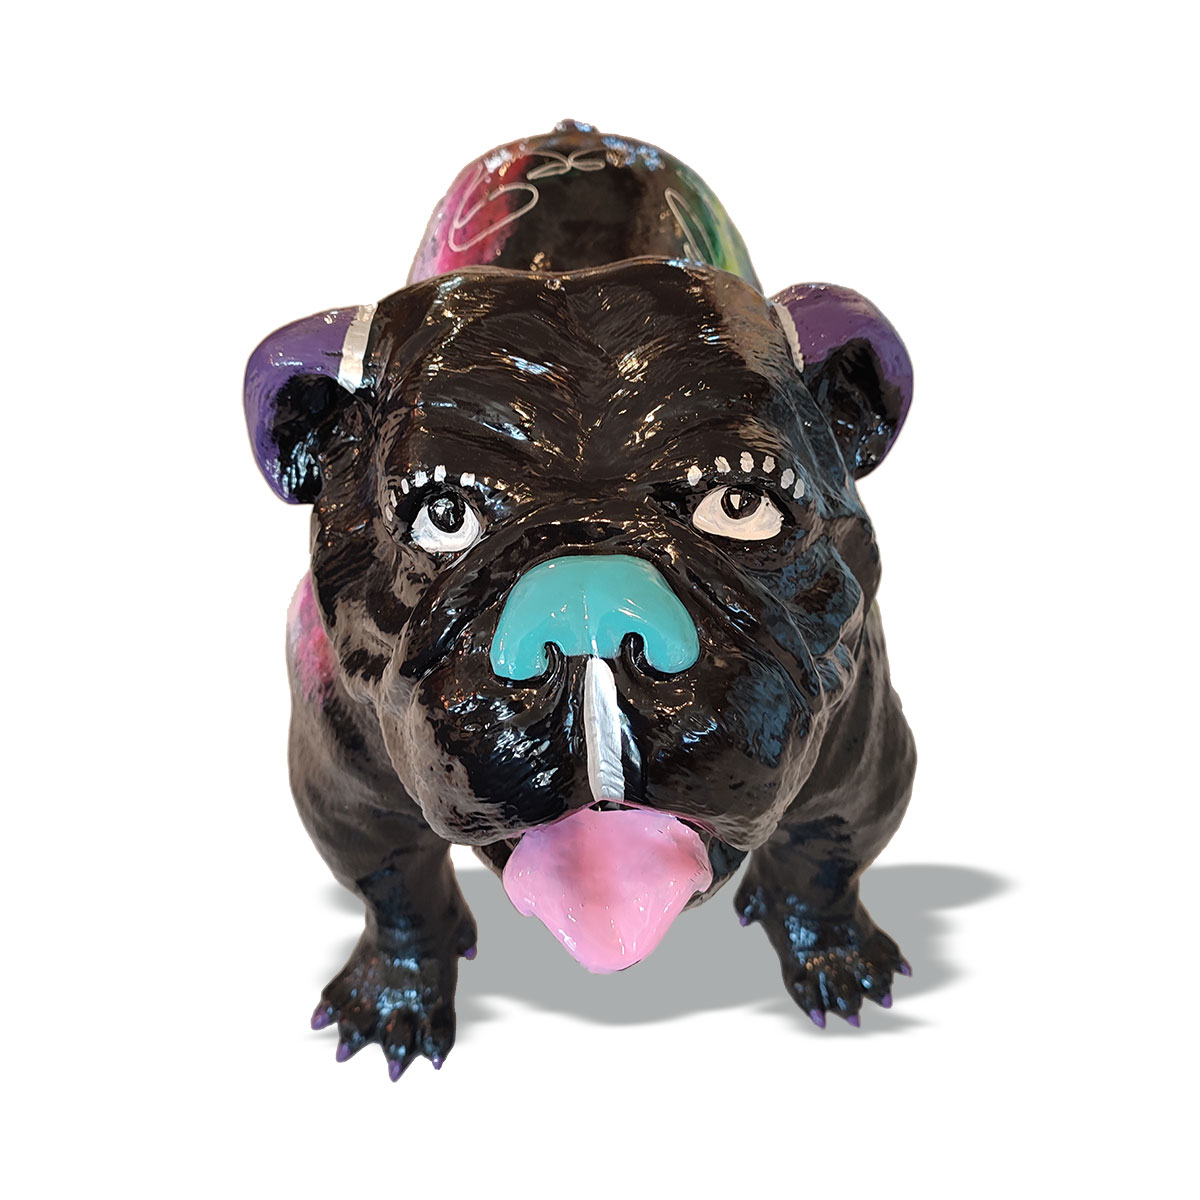 Bulldoggen Figur aus Kunstharz - Handgefertigte Deko Figur von